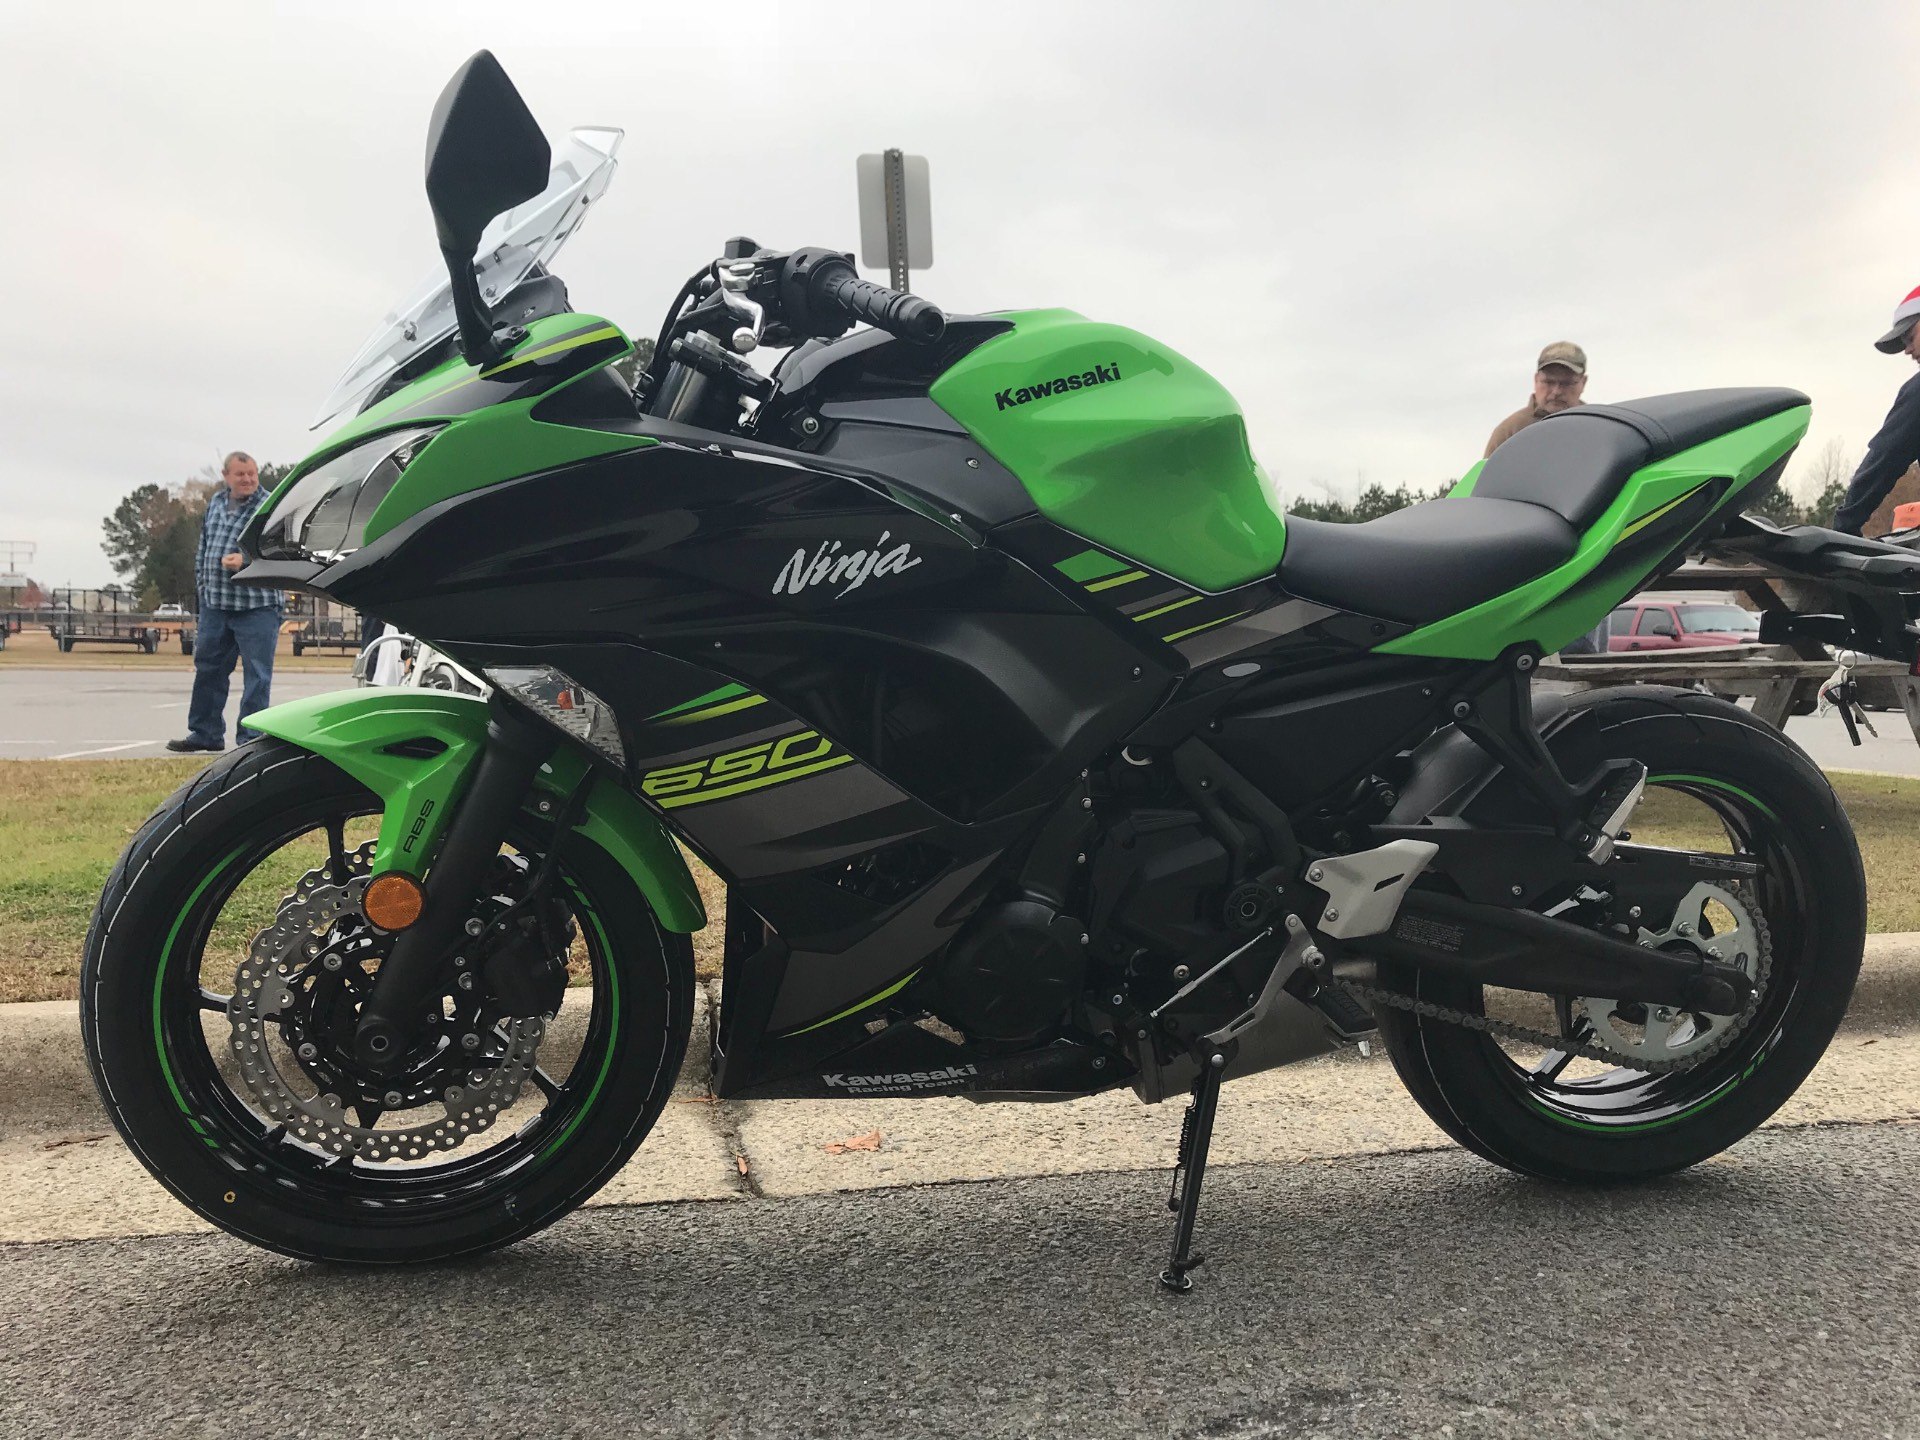 2018 Kawasaki Ninja 650 ABS Review • Total Motorcycle